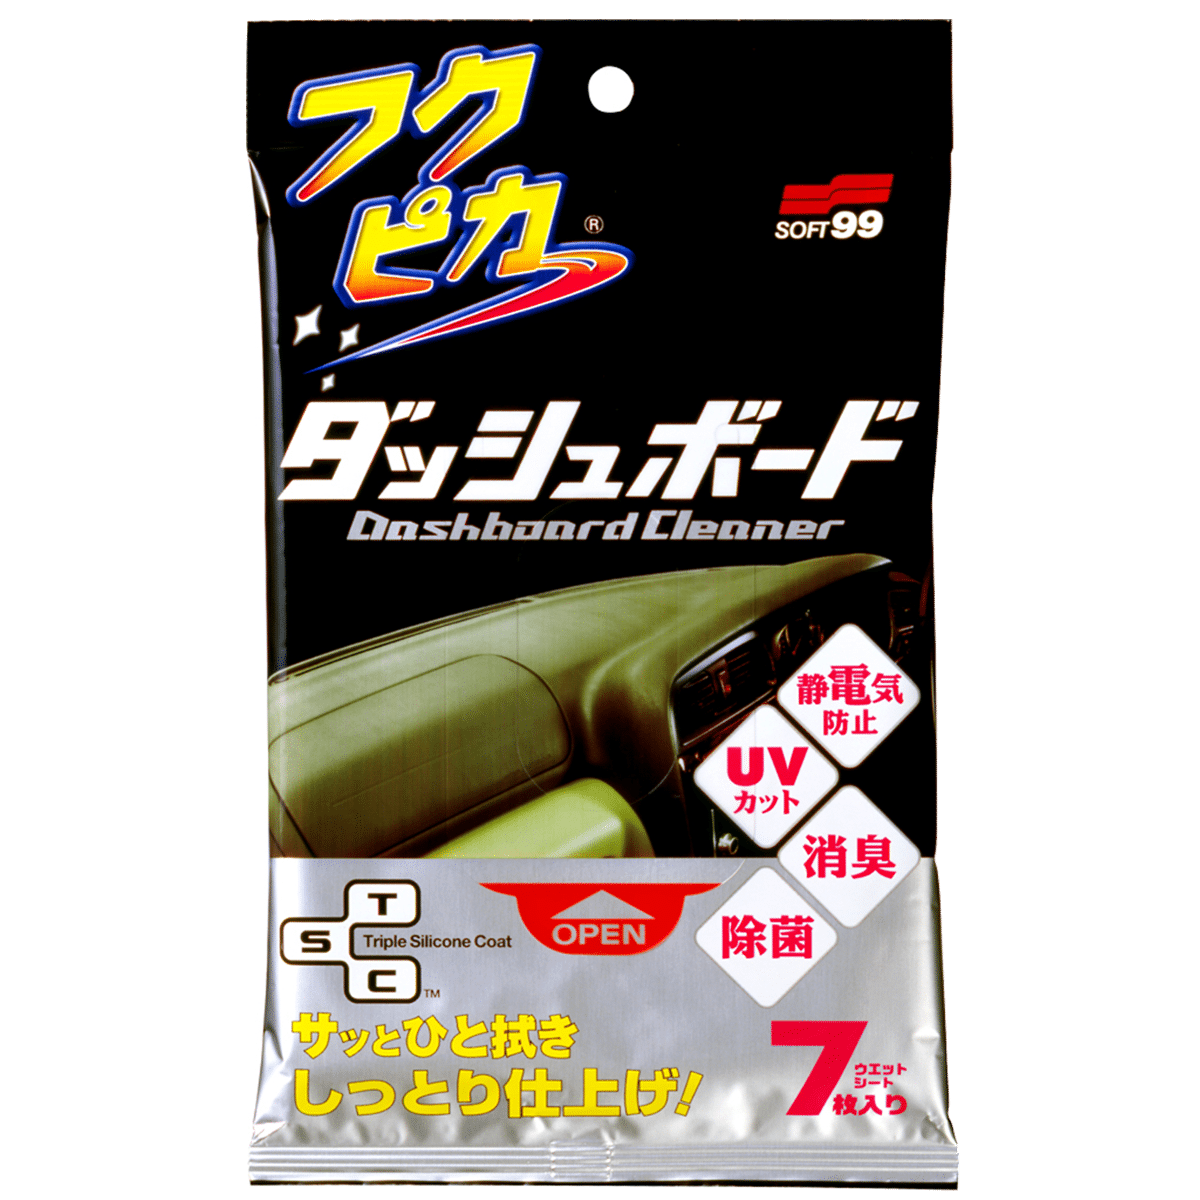 SOFT99 Fukupika Dashboard Cleaning Cloth Chusteczki do Czyszczenia Deski Rozdzielczej 7szt